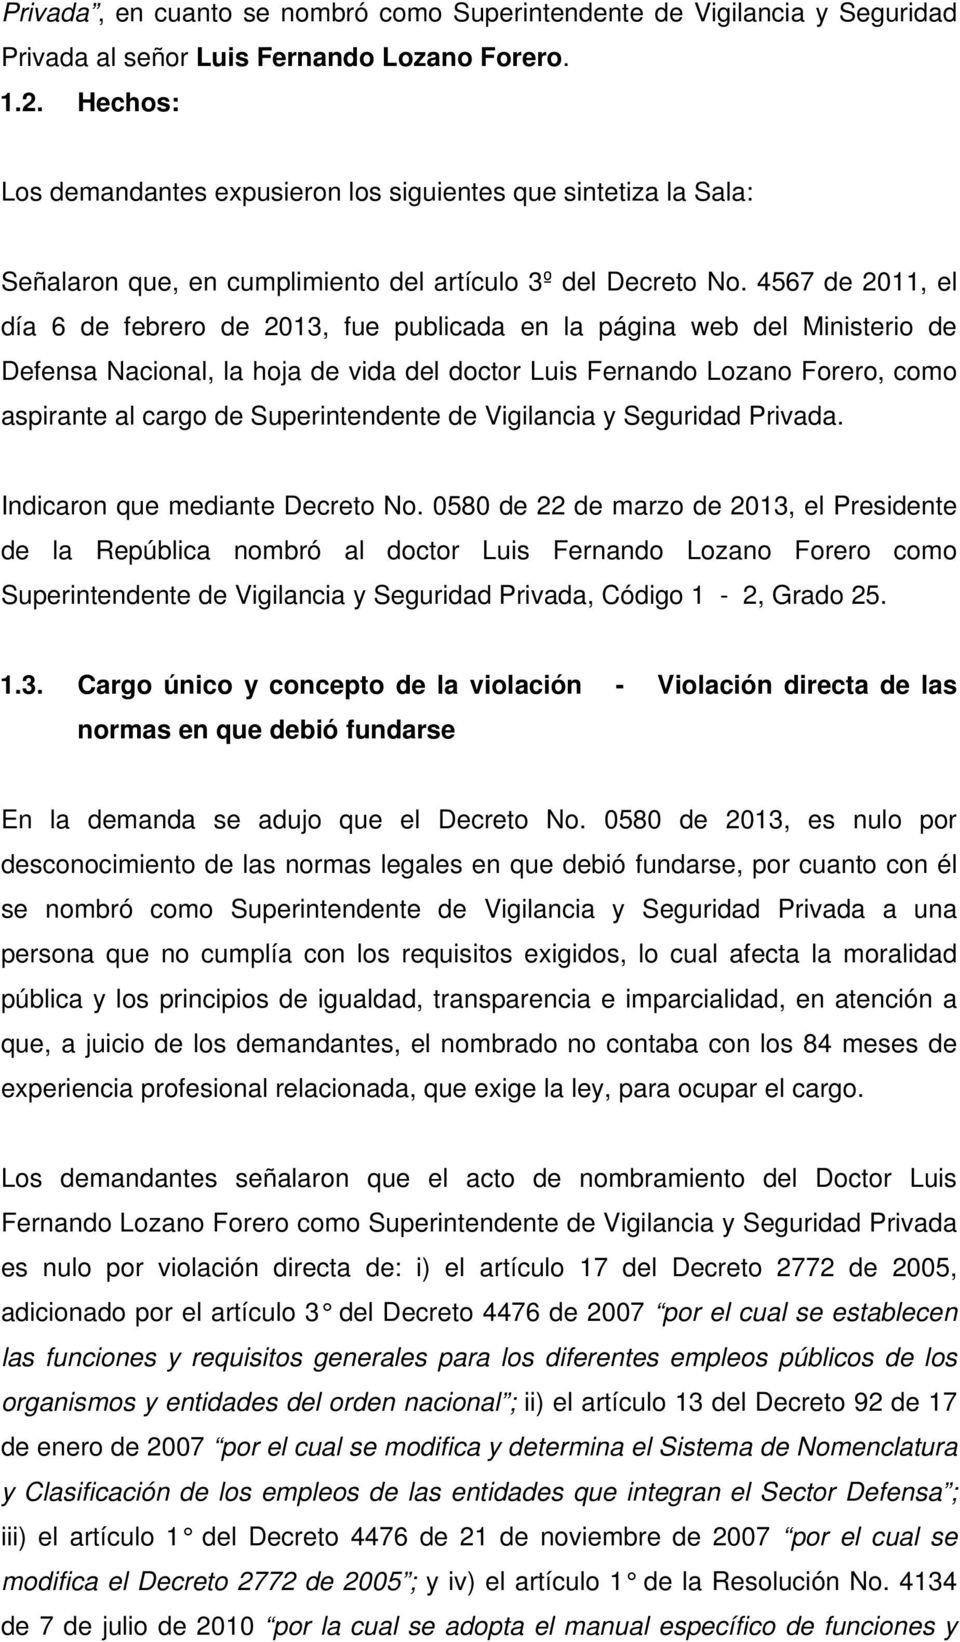 4567 de 2011, el día 6 de febrero de 2013, fue publicada en la página web del Ministerio de Defensa Nacional, la hoja de vida del doctor Luis Fernando Lozano Forero, como aspirante al cargo de